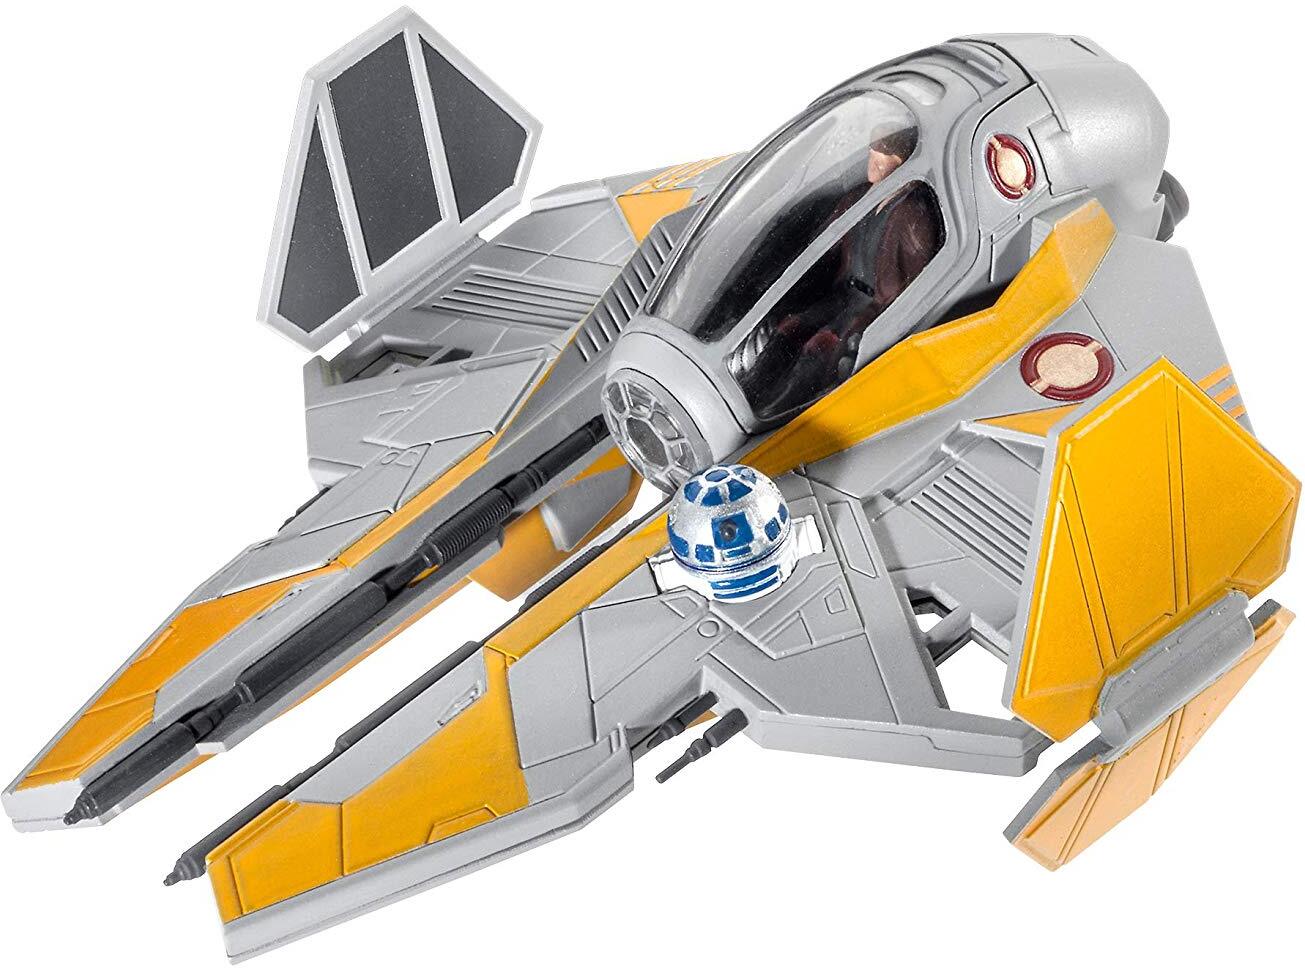 Revell Modellbausatz Star Wars Anakin's Jedi Starfighter im Maßstab 1:58, Level 3, originalgetreue Nachbildung mit vielen Detail